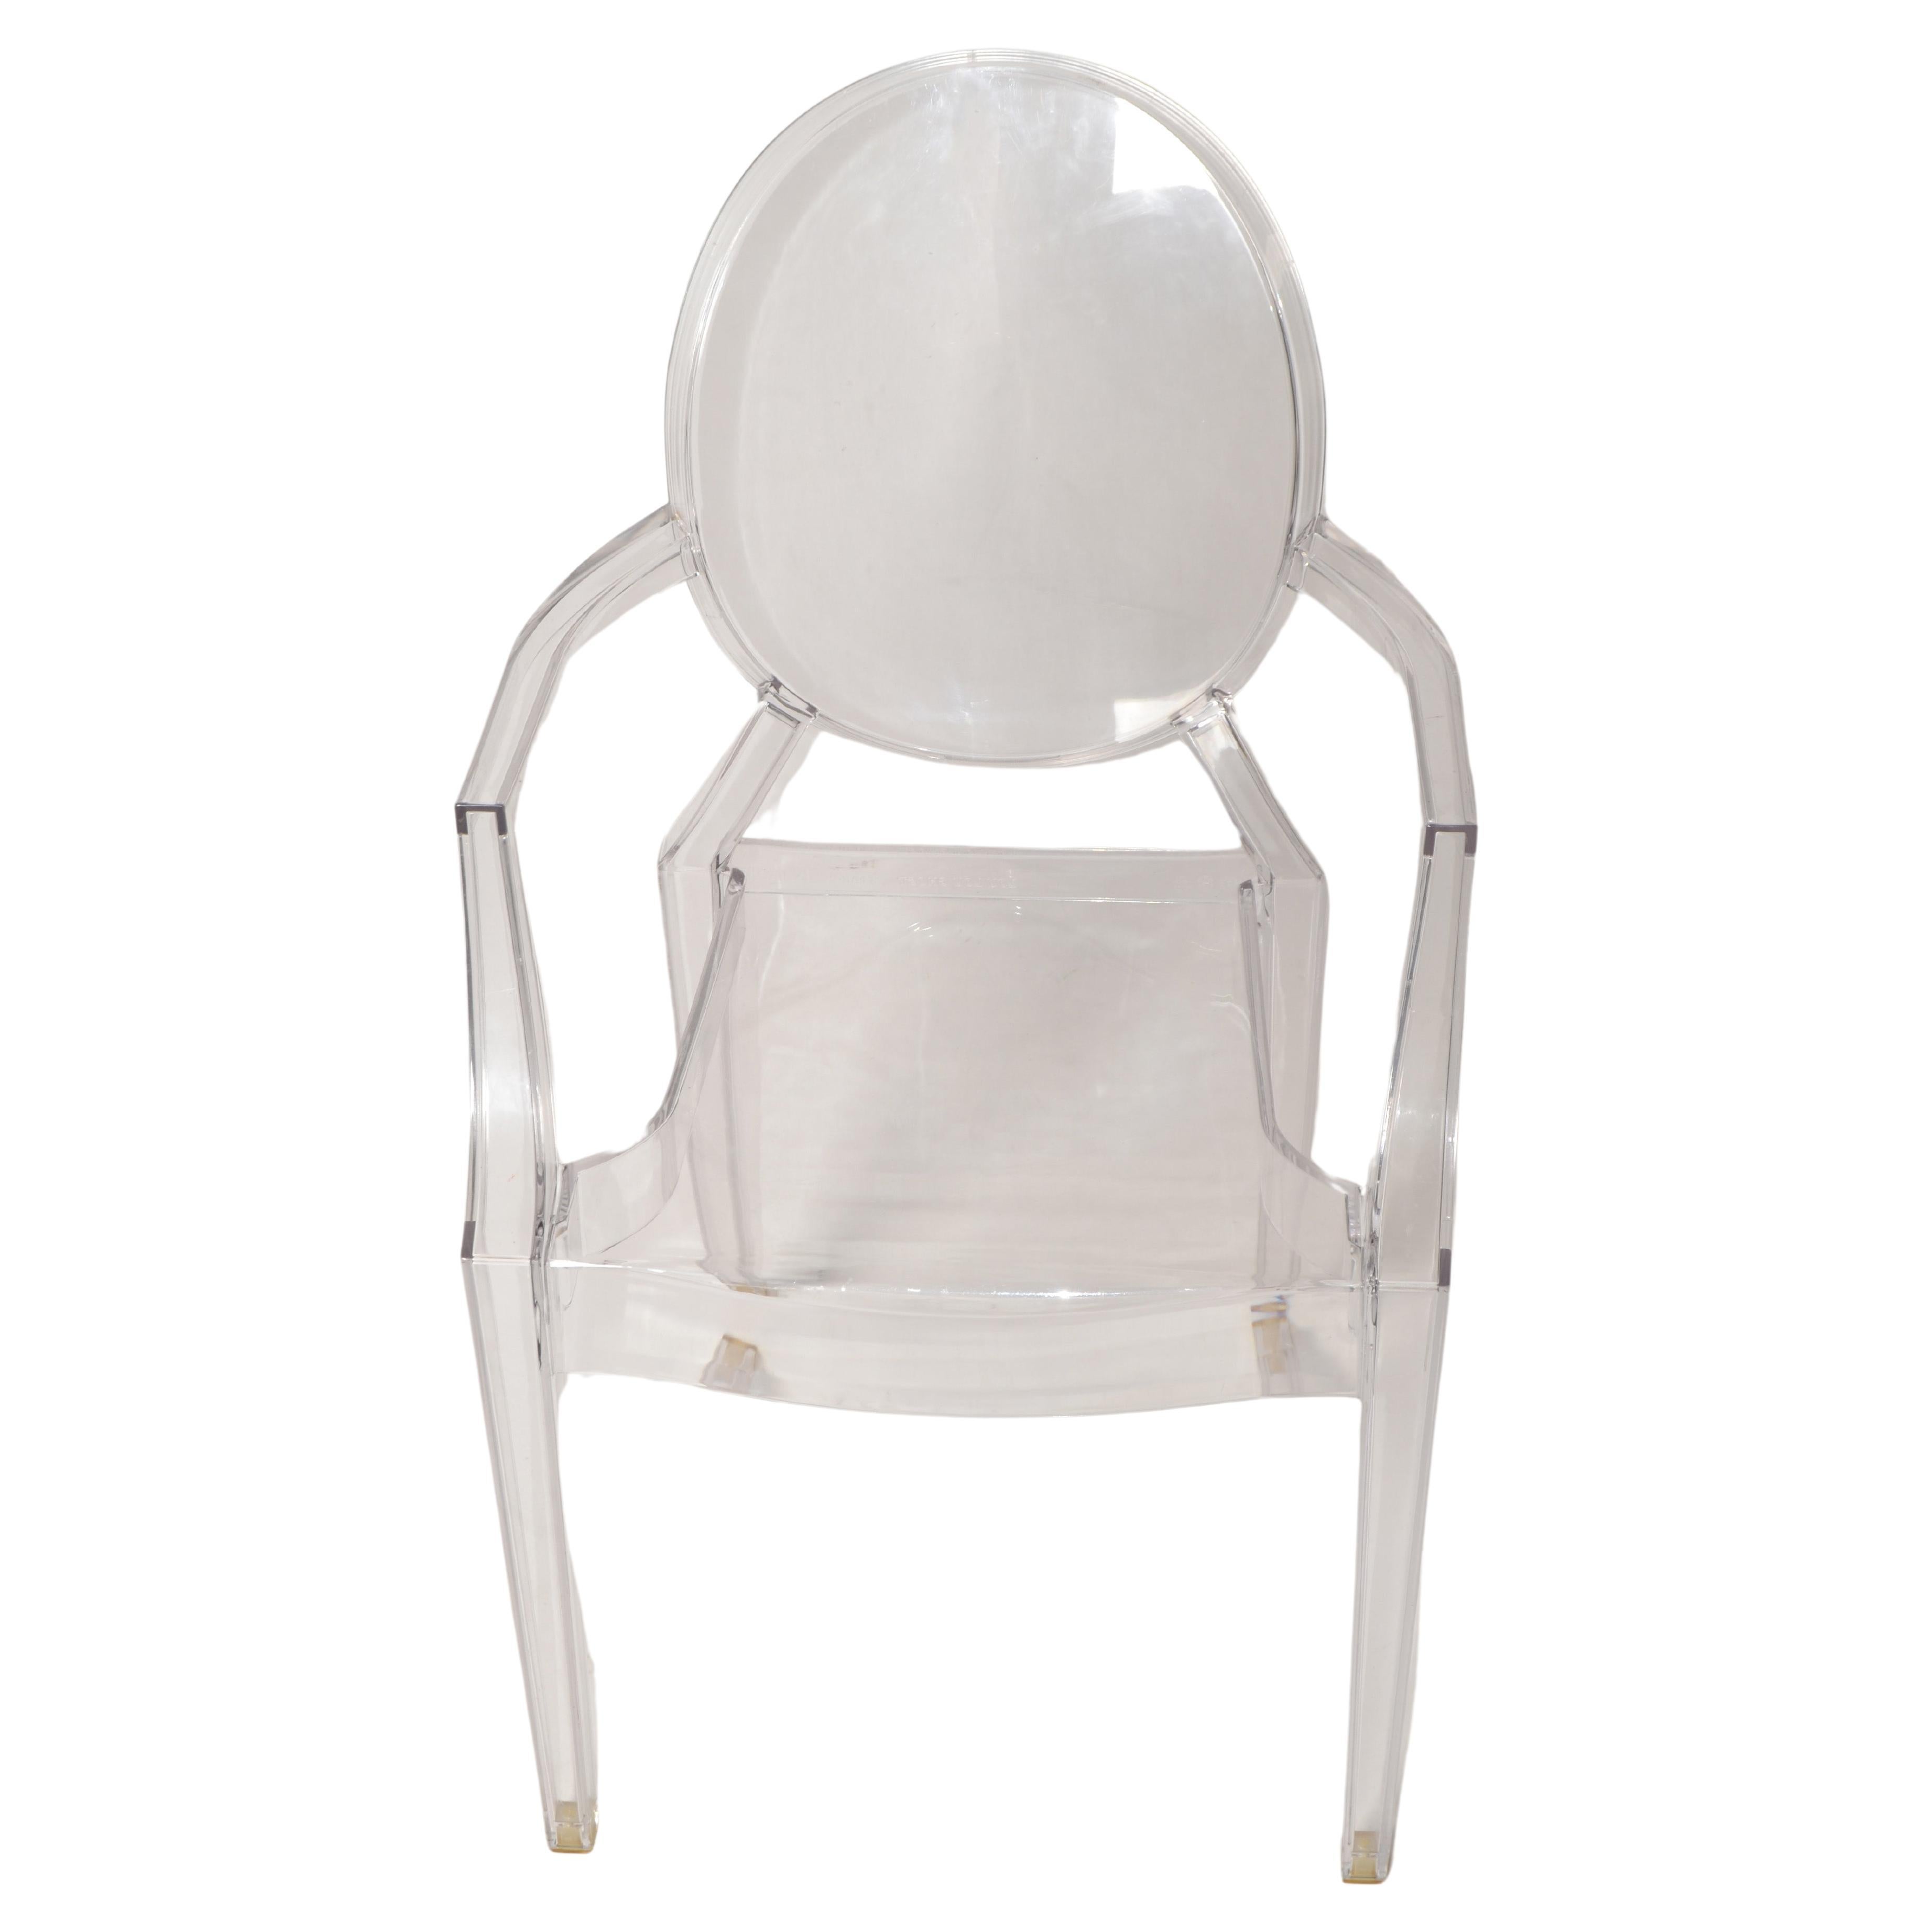 Wir bieten den Vintage Classic Lou Lou Kartell Ghost Chair für Kinder aus transparentem Kunststoff an. Der Vintage-Sessel Lou Lou Ghost von Philippe Starck für die lustige Welt der Kinder. Hergestellt von Kartell Italien in den späten 1980er